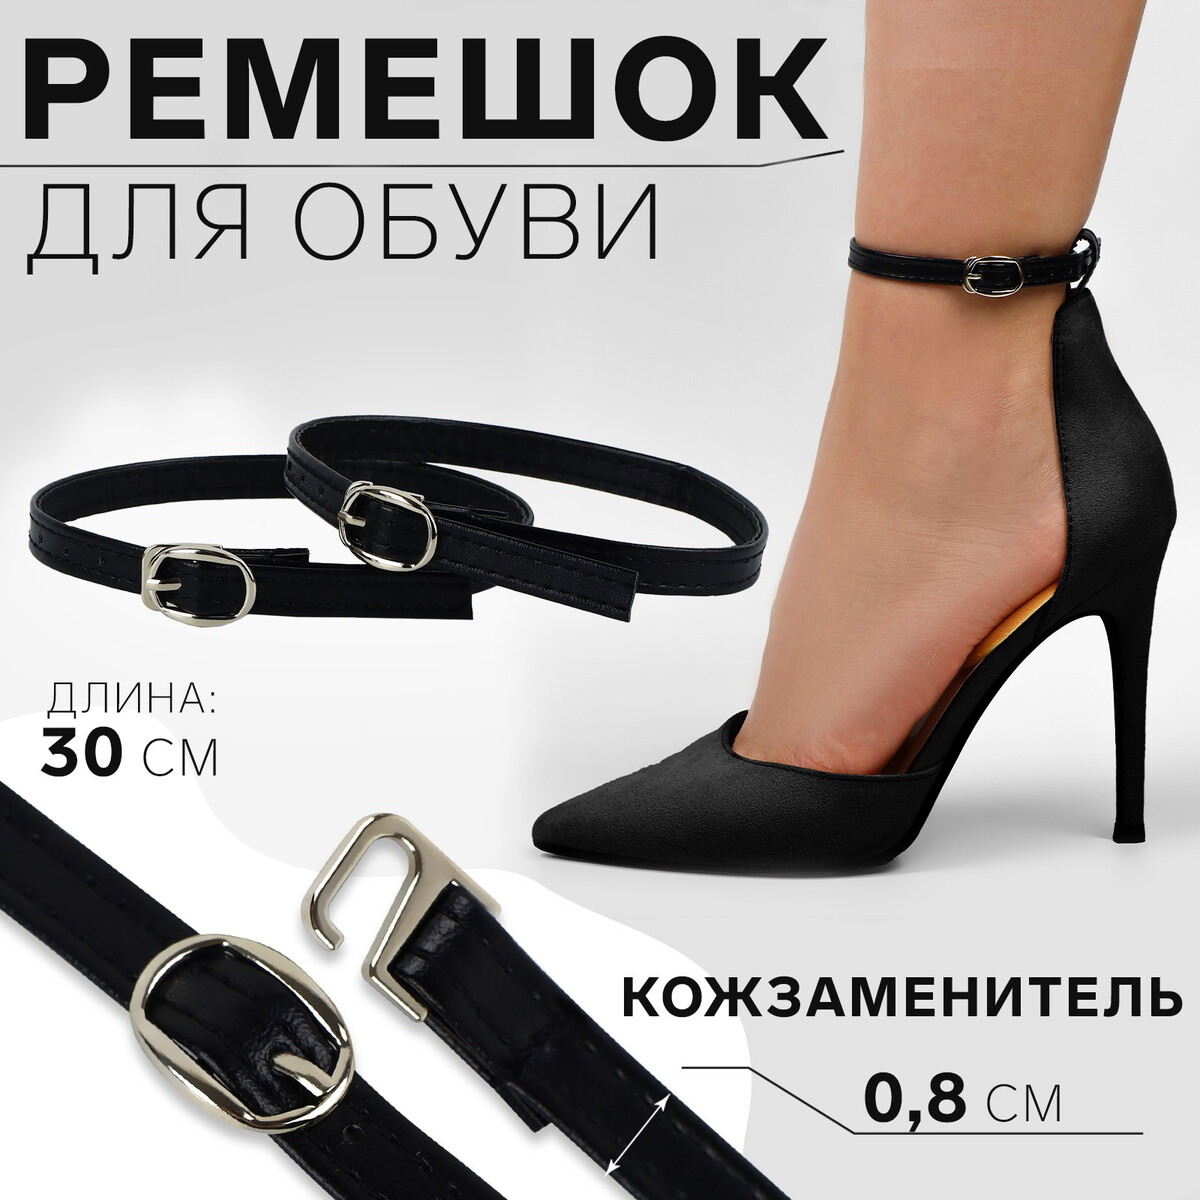 Ремешок для обуви, искусственная кожа, 30 см, 8 мм, 2 шт, цвет черный